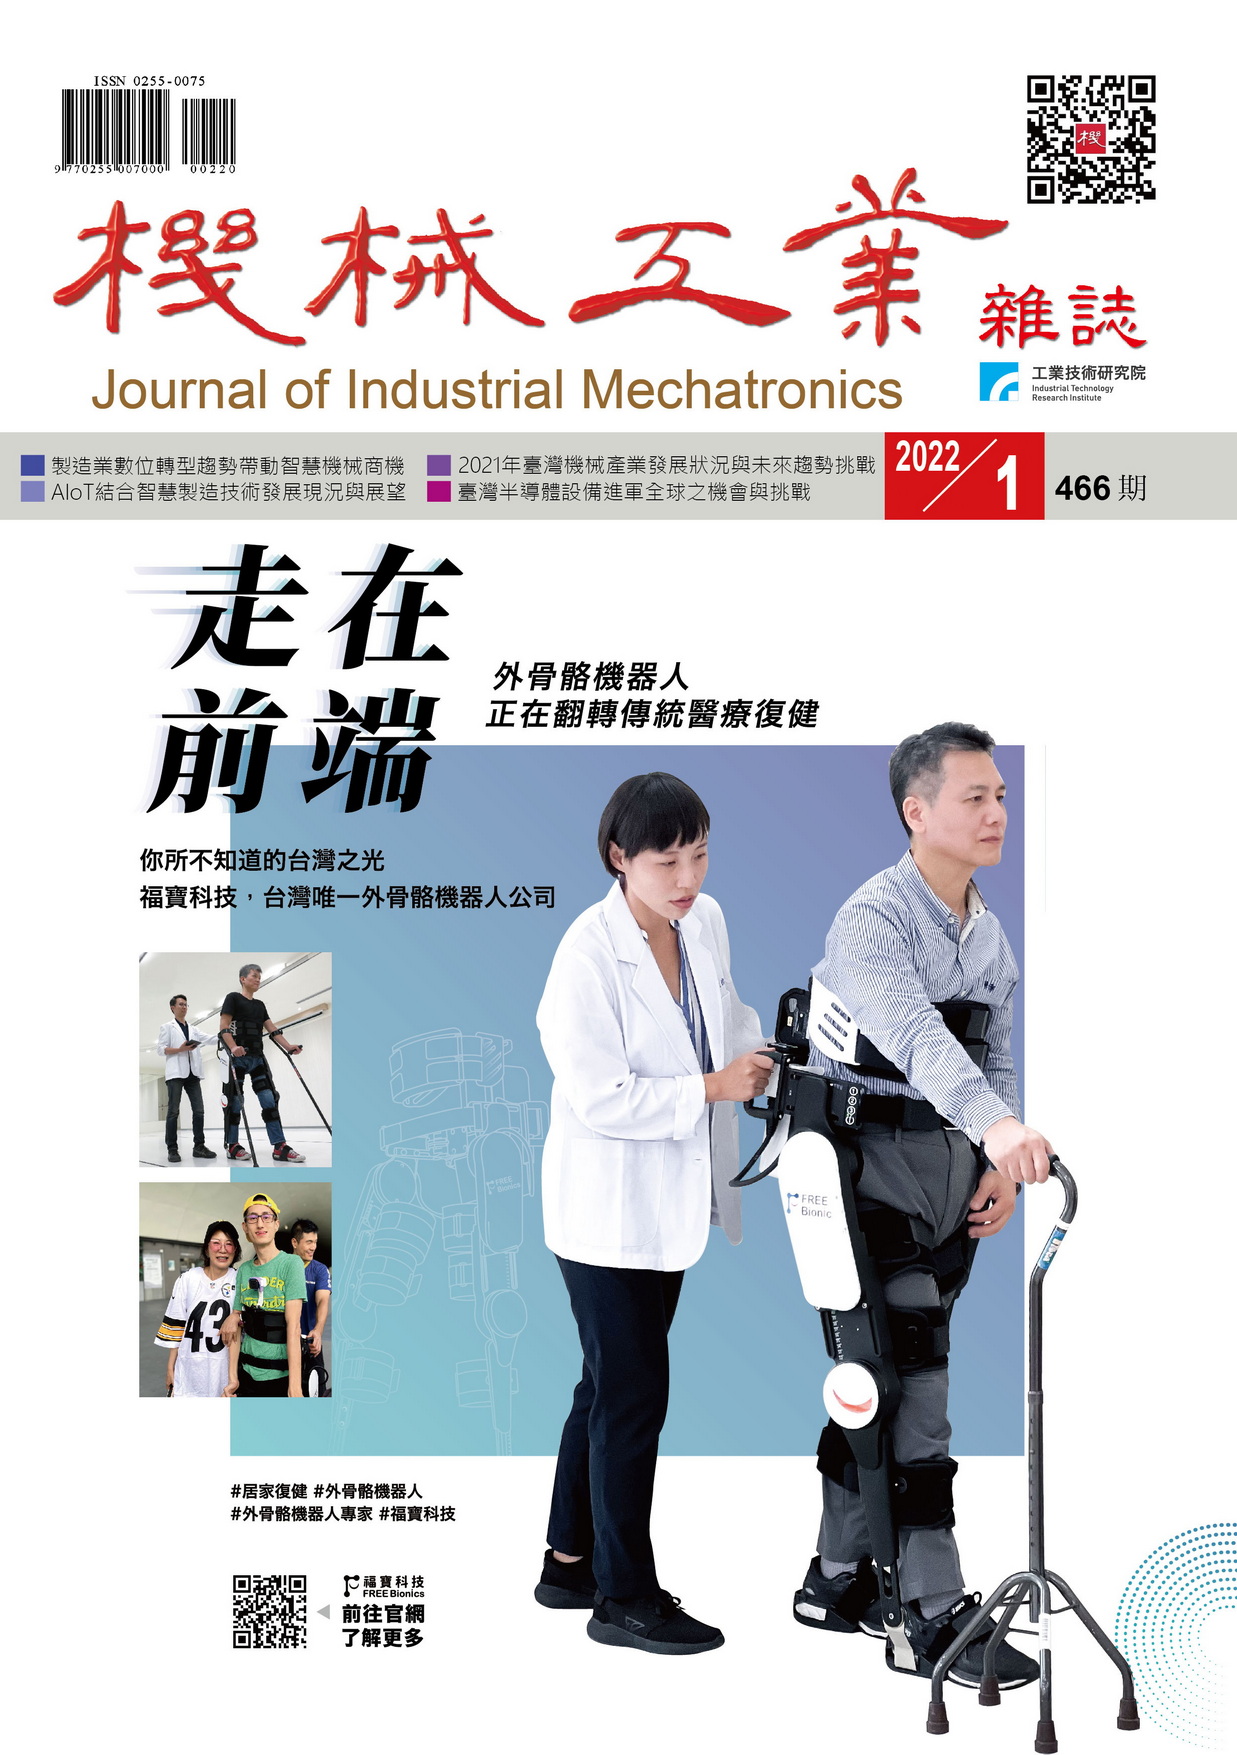 機械工業雜誌